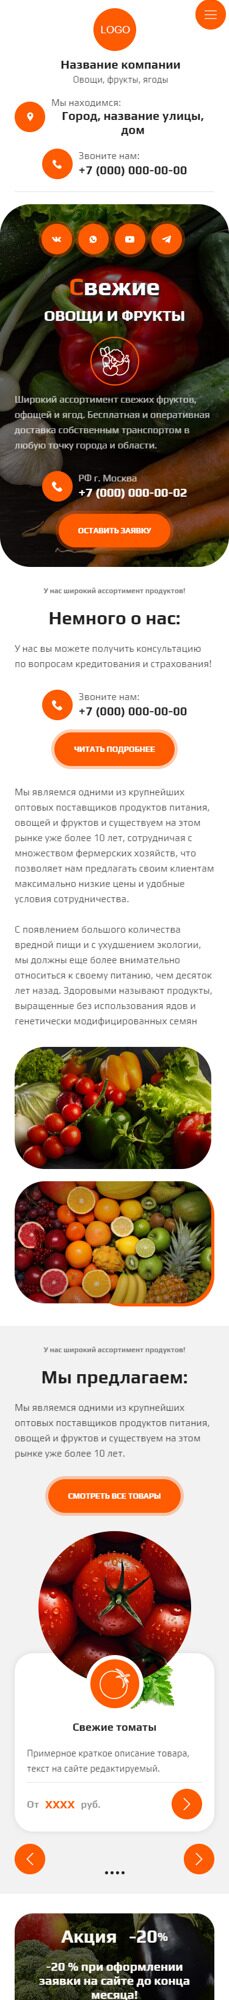 Готовый Сайт-Бизнес № 5905901 - Овощи, фрукты, орехи, грибы (Мобильная версия)